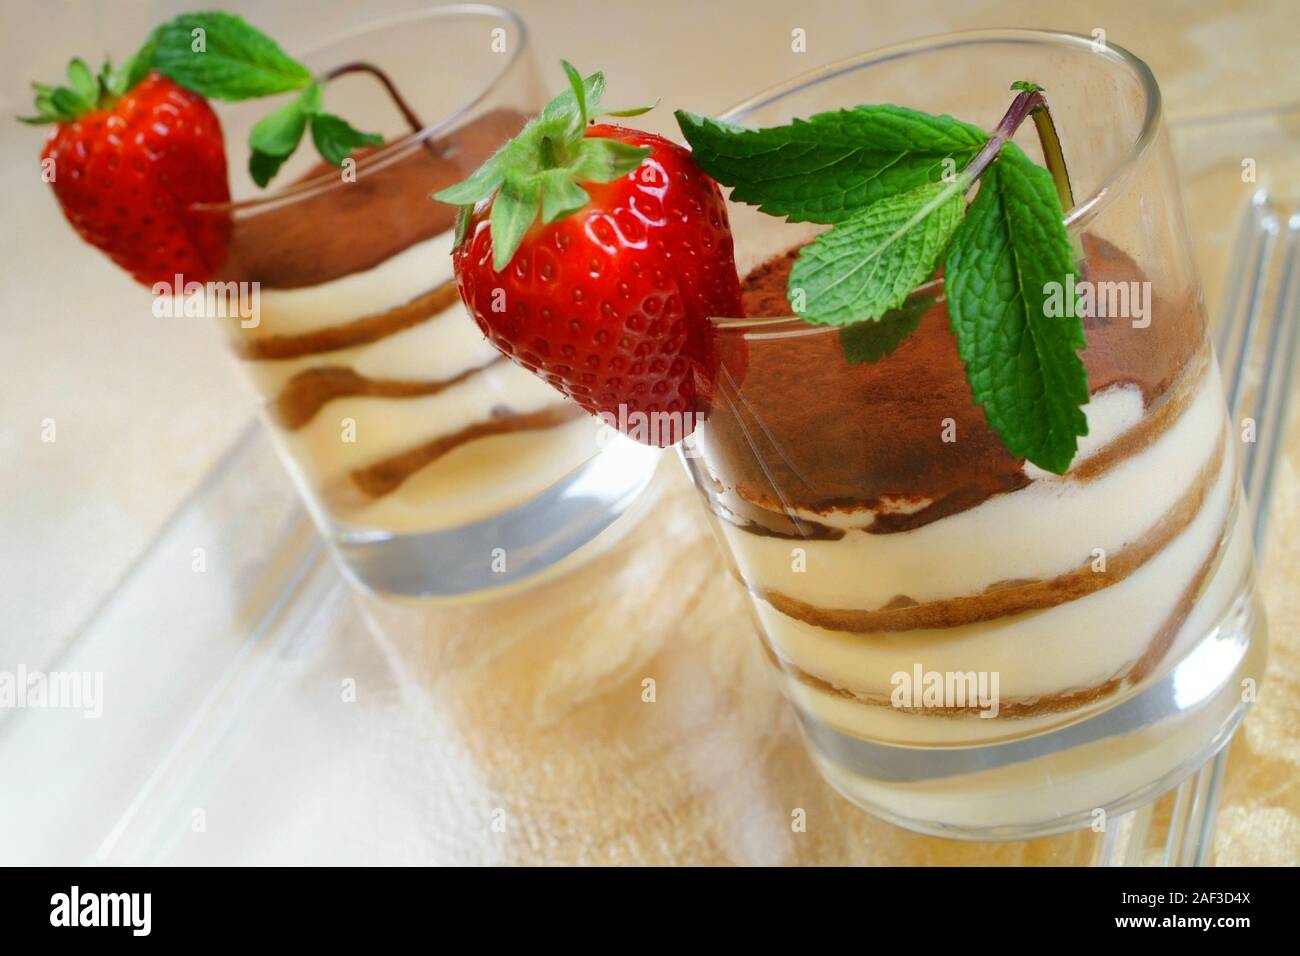 Italienisches Essen Rezept Tiramisù. Typische italienische Dessert in  Gläsern mit Schichten von Mascarpone, Plätzchen, Kaffee und Minze Erdbeeren  Stockfotografie - Alamy